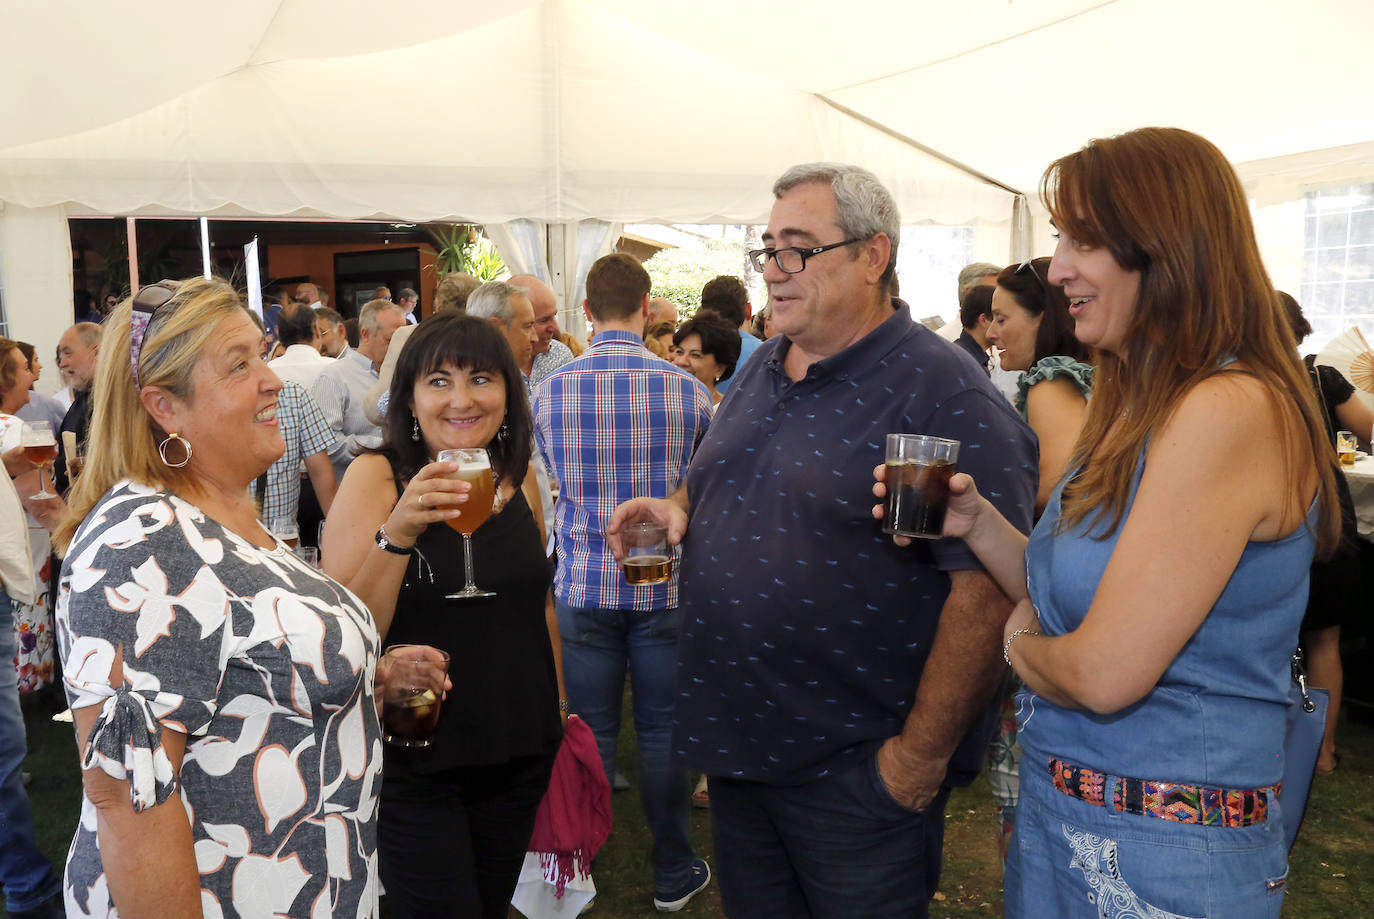 Fotos: El Norte de Castilla comparte las fiestas con los palentinos en su caseta (2/2)